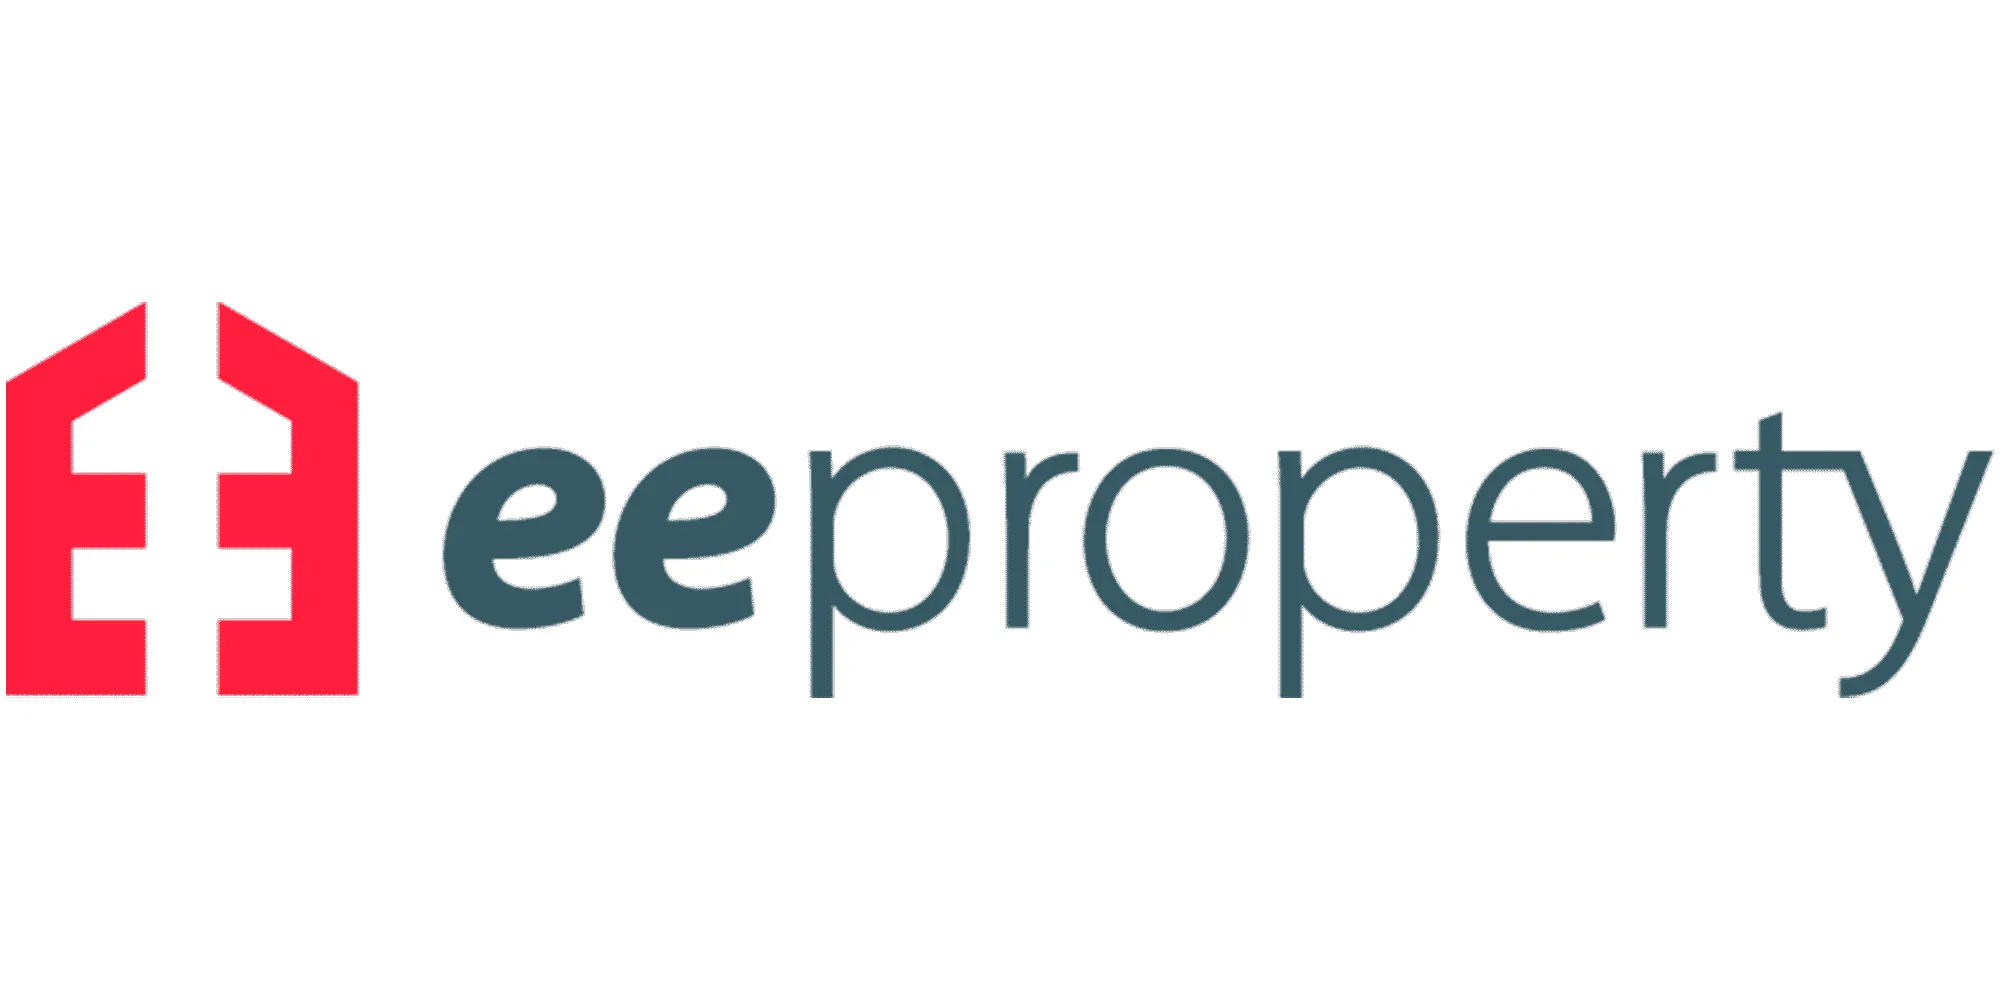 eeproperty logo